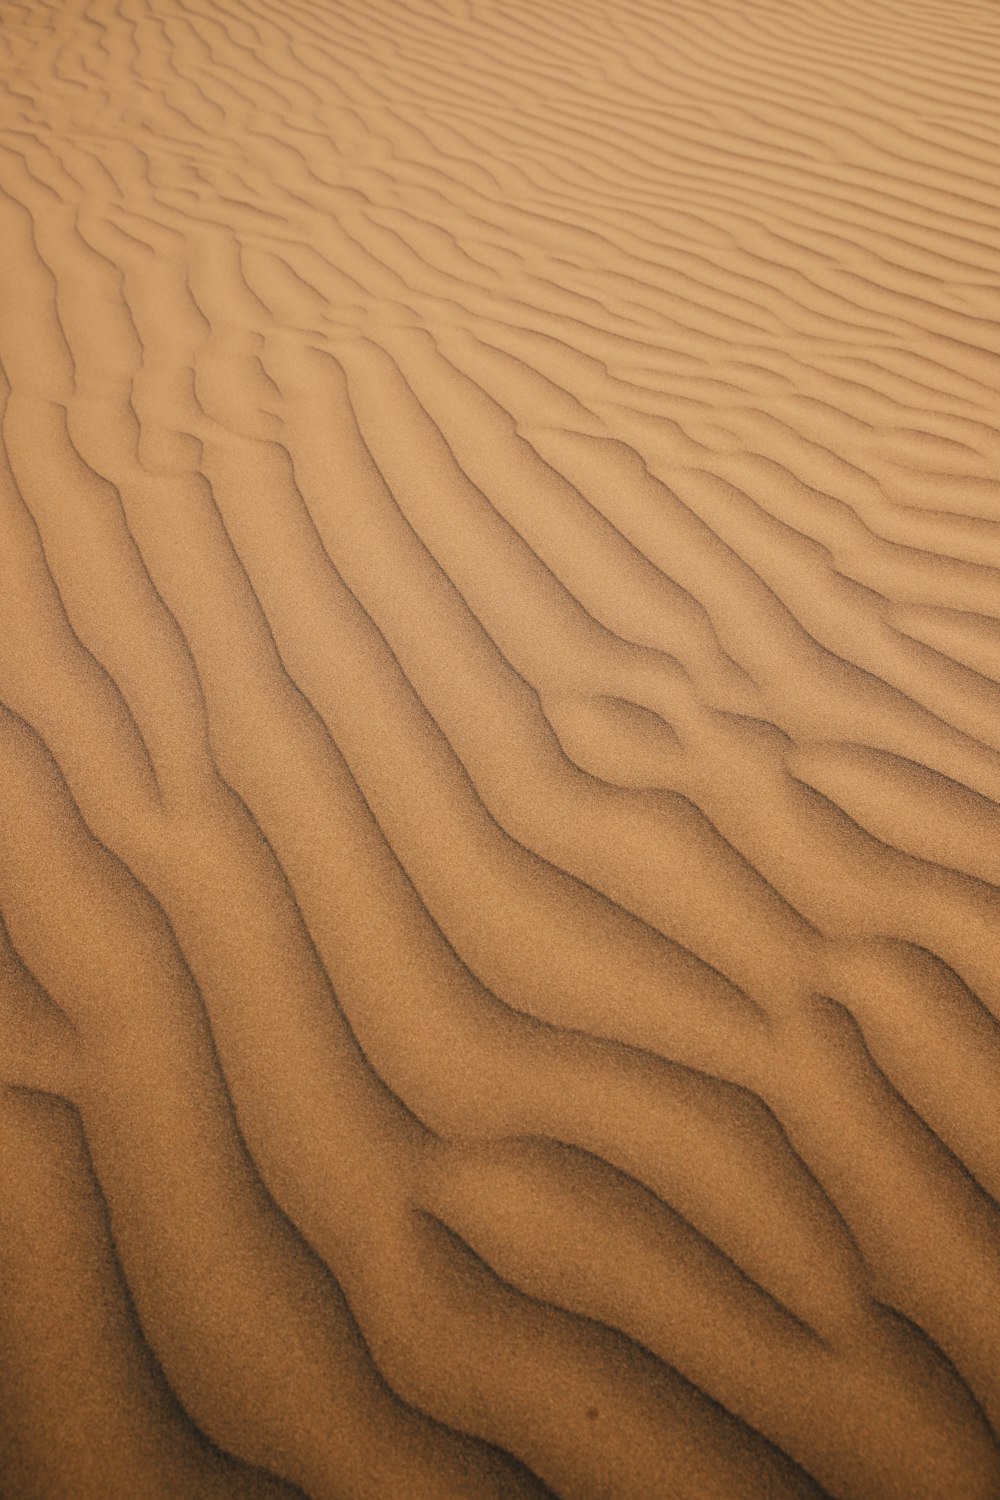 une zone sablonneuse avec des lignes dans le sable